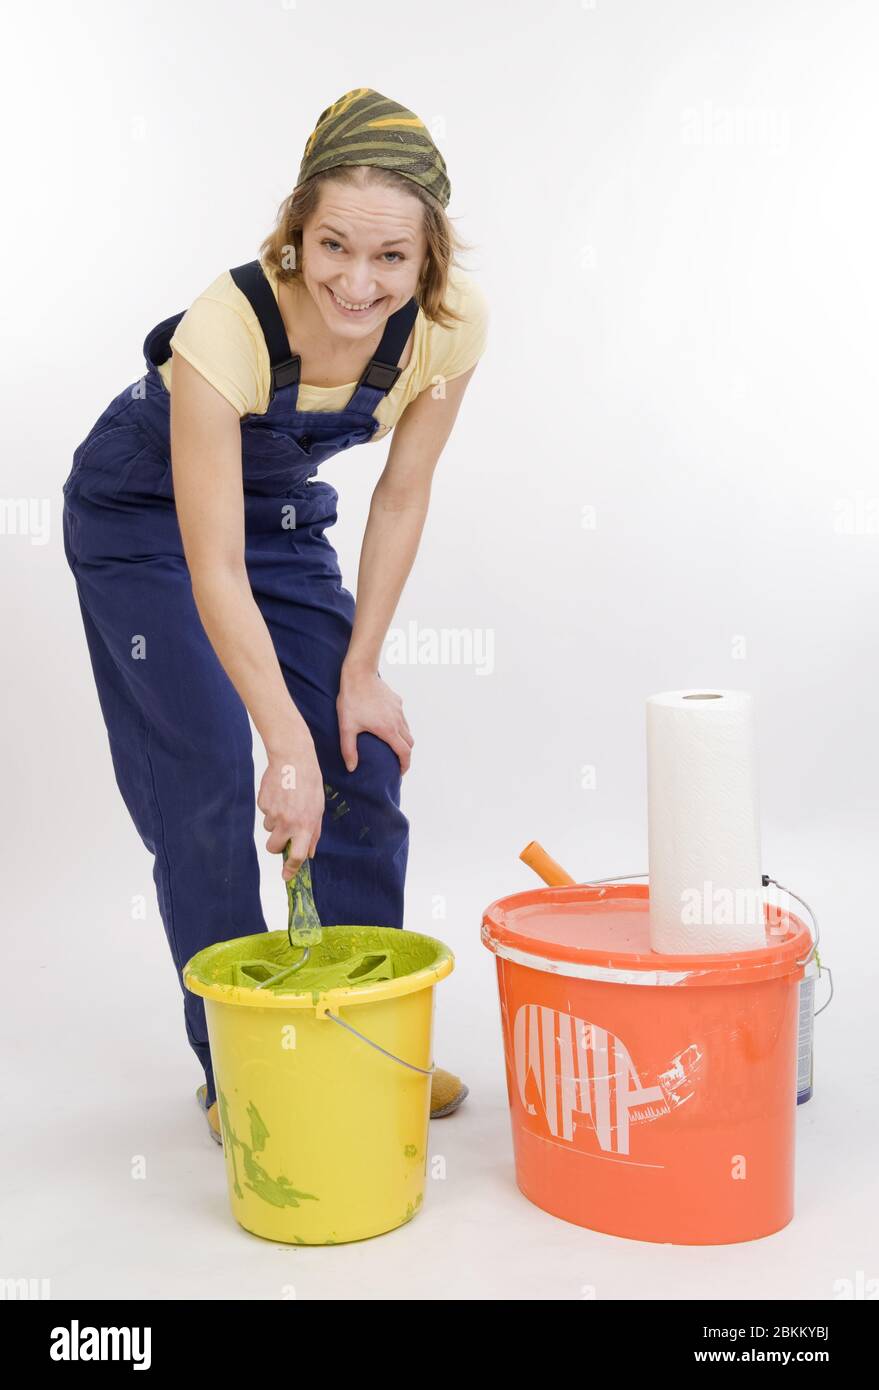 Junge Frau renoviert die Wohnung und ruehrt einen Eimer mit Farbe an, MR: Oui Banque D'Images